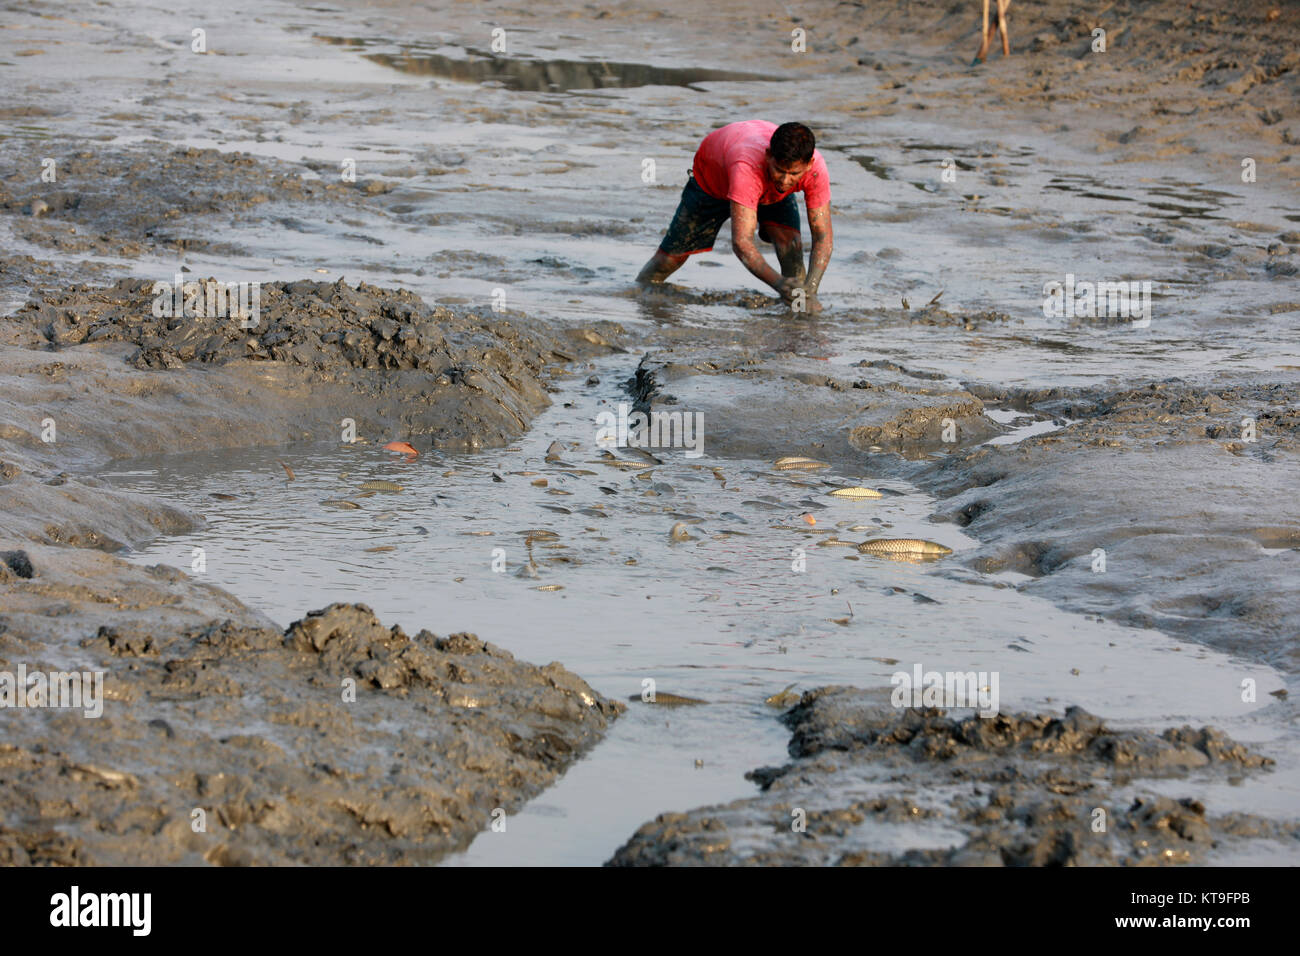 KHULNA, BANGLADESH - le 15 décembre 2017 : Les gens de la pêche dans l'assèchement des rivières, canaux et plans d'eau durant la saison d'hiver est une caractéristique commune i Banque D'Images